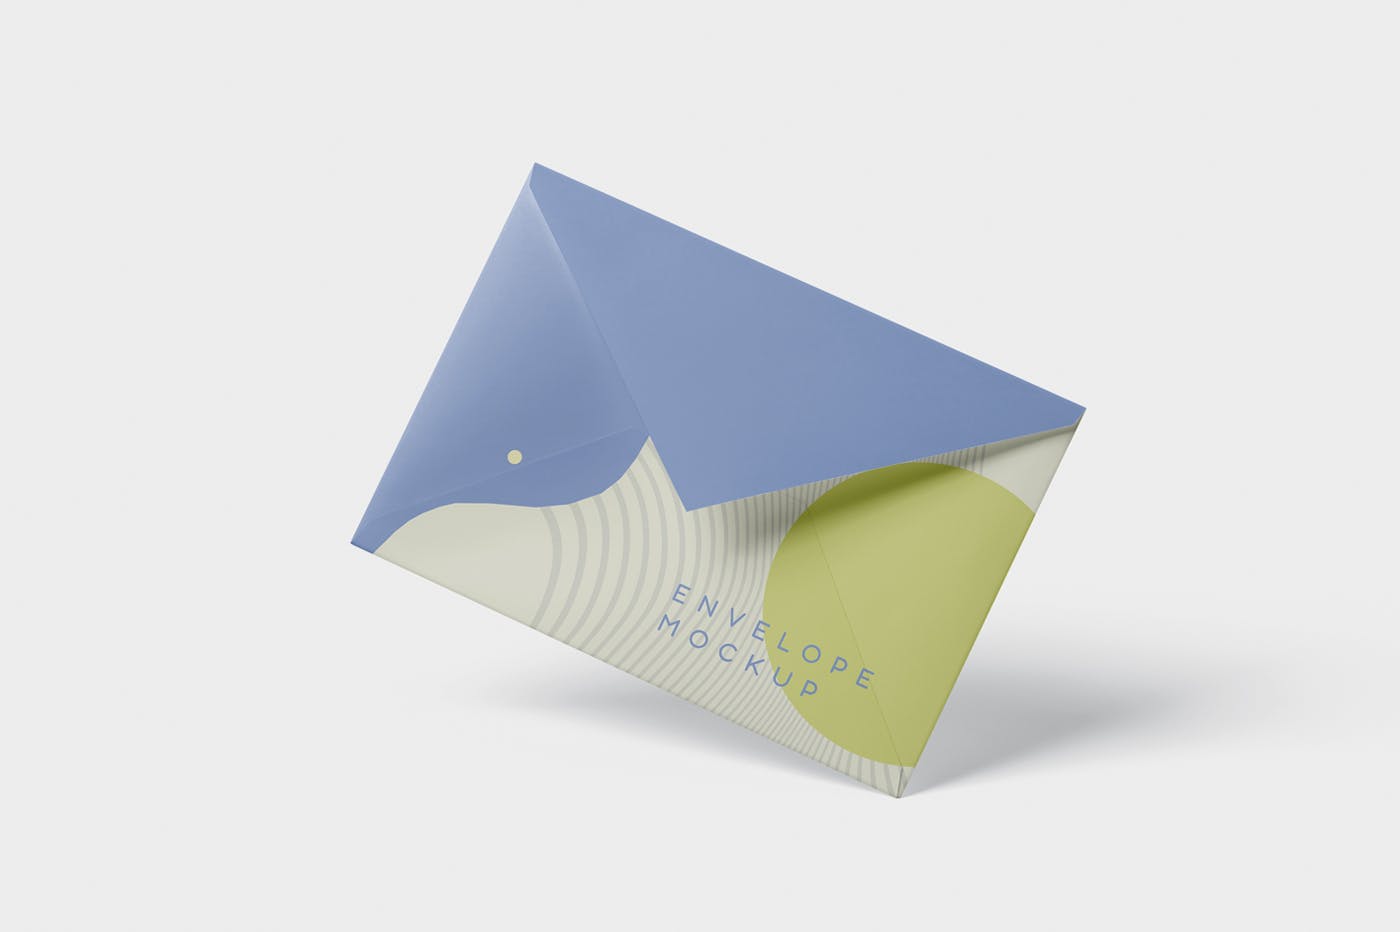 高端企业信封外观设计图素材库精选模板 Envelope C5 – C6 Mock-Up Set插图(2)